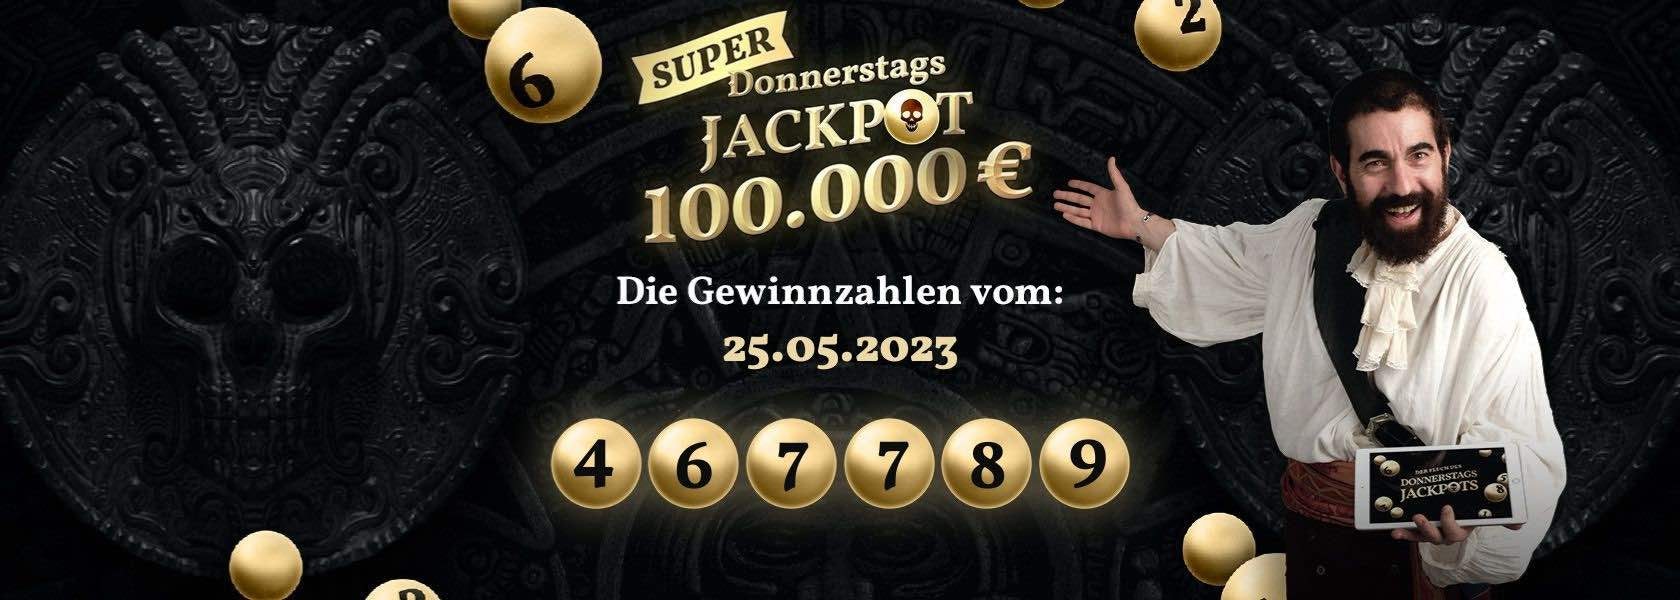 donnerstags-jackpot-25052023-jackpotpiraten